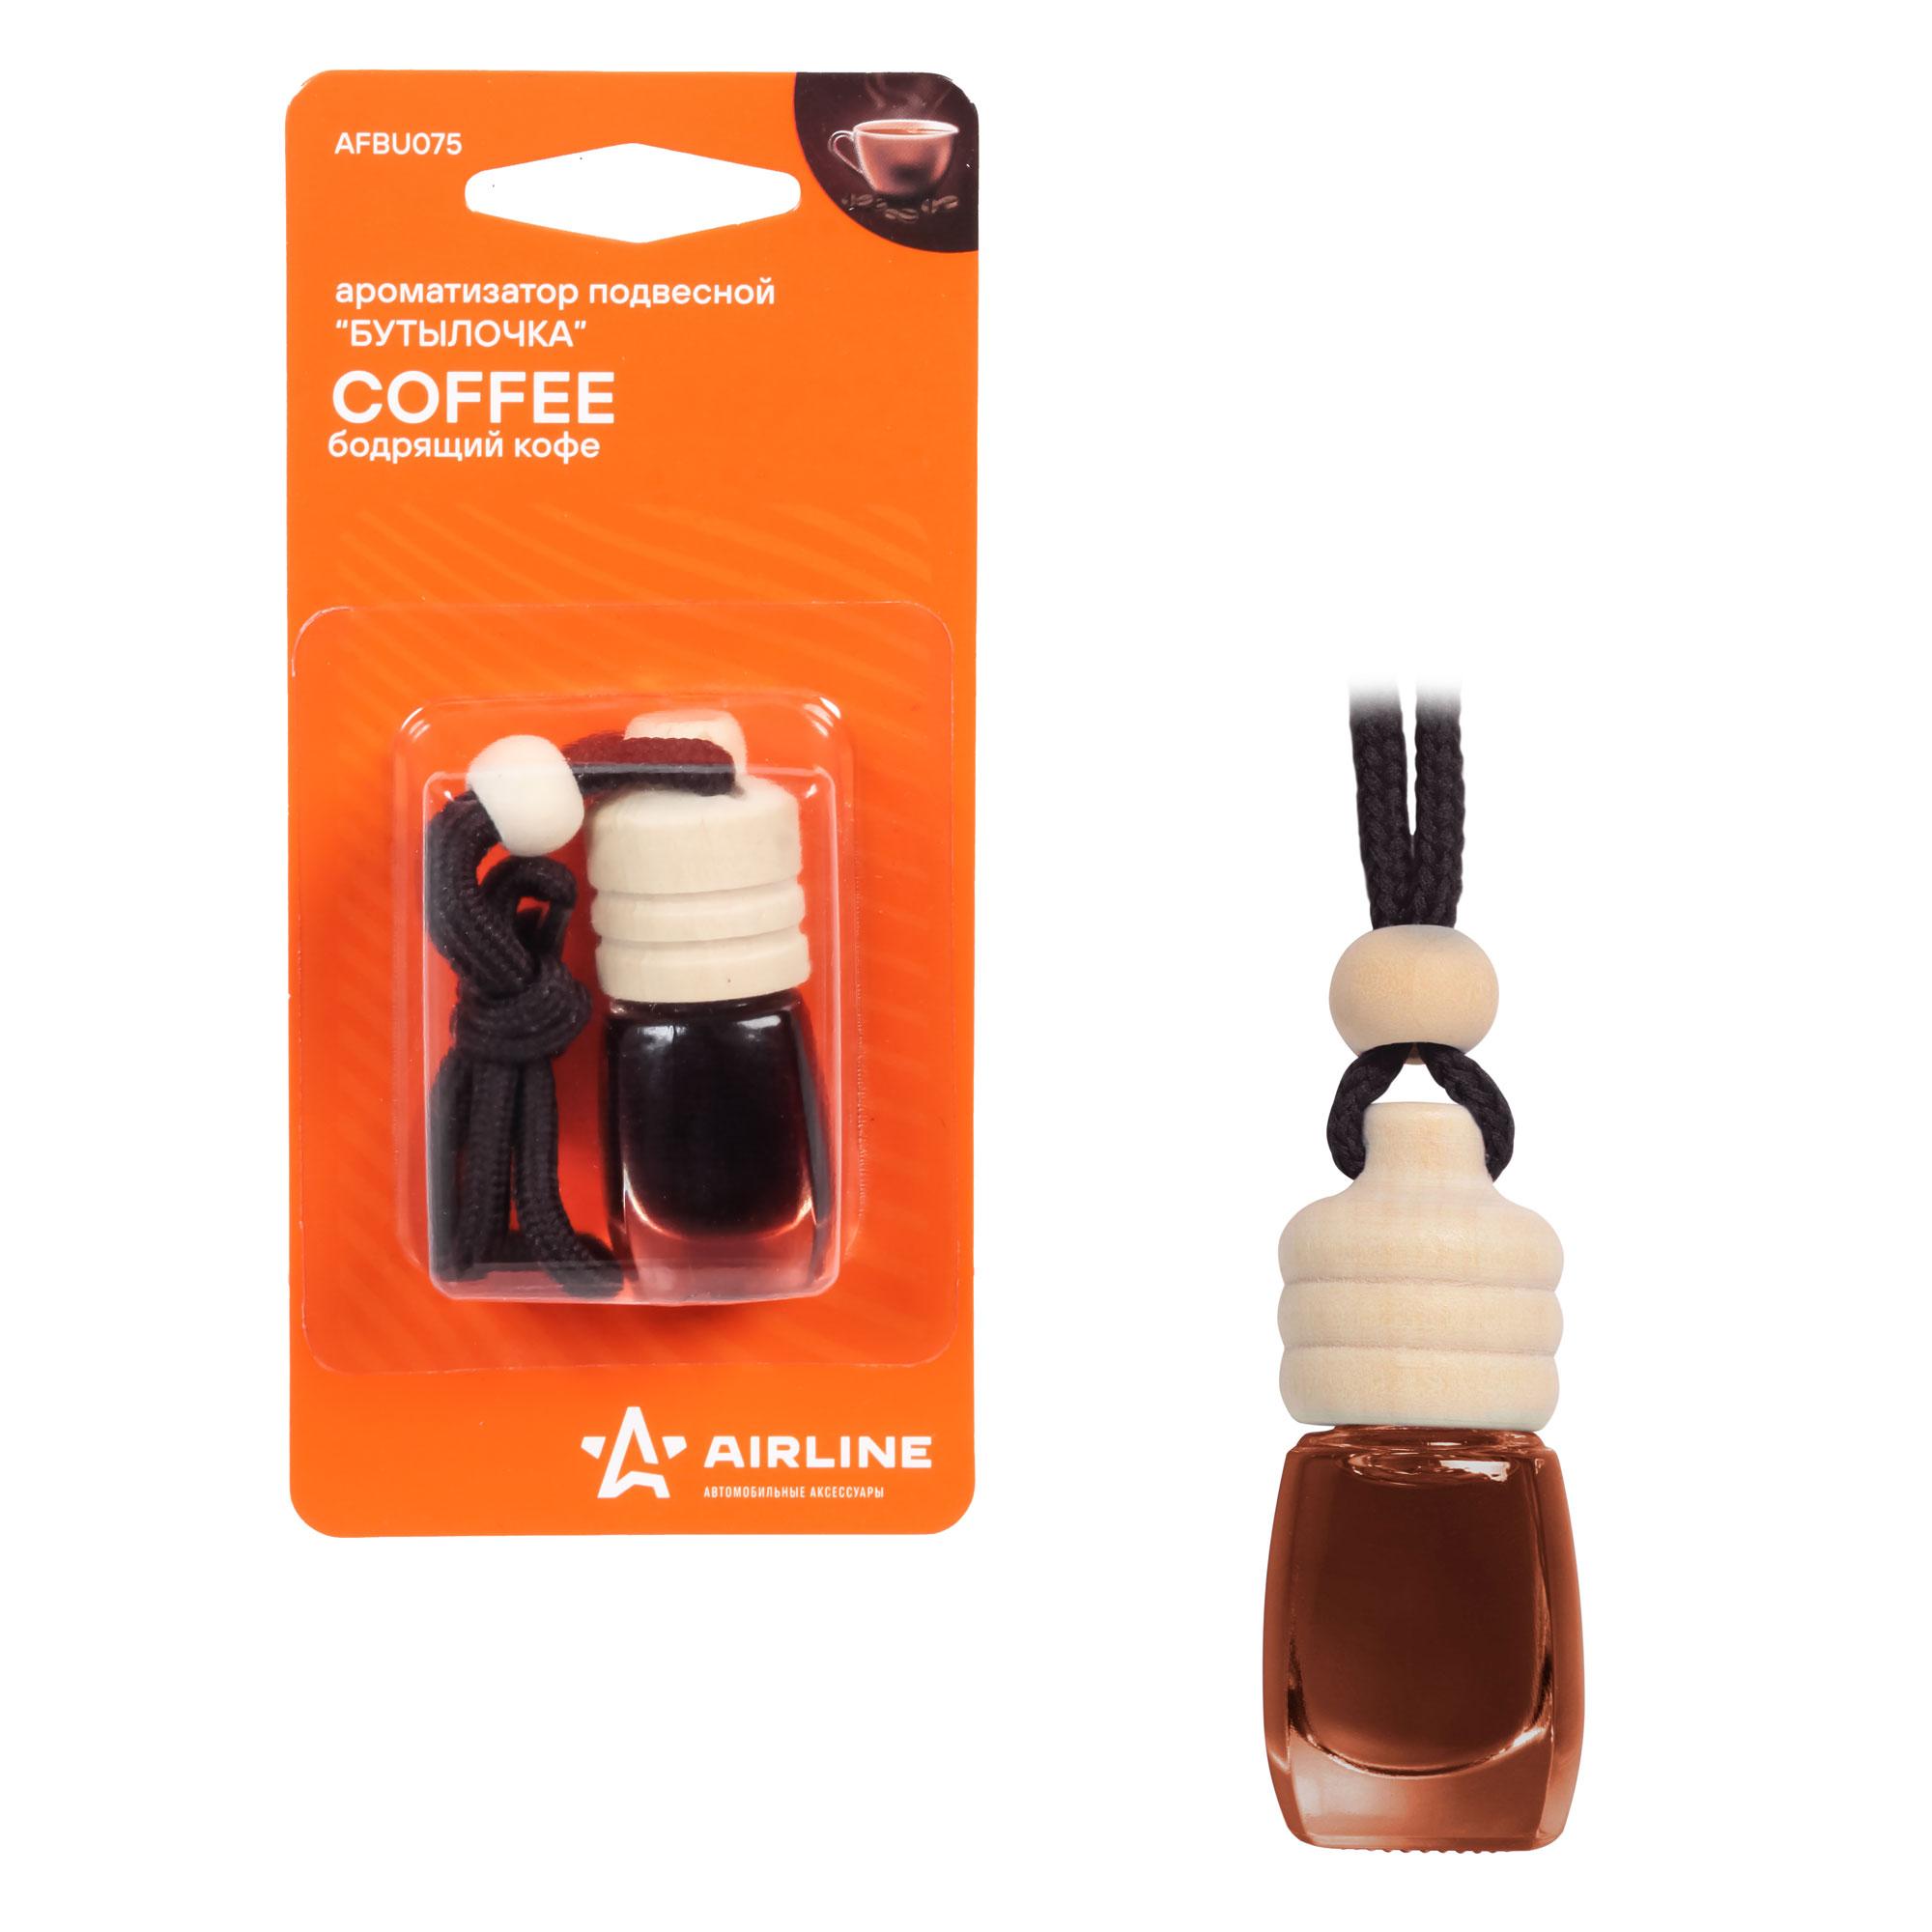 Ароматизатор автомобильный подвесной AirLine Бутылочка, жидкий, бодрящий кофе (AFBU075)